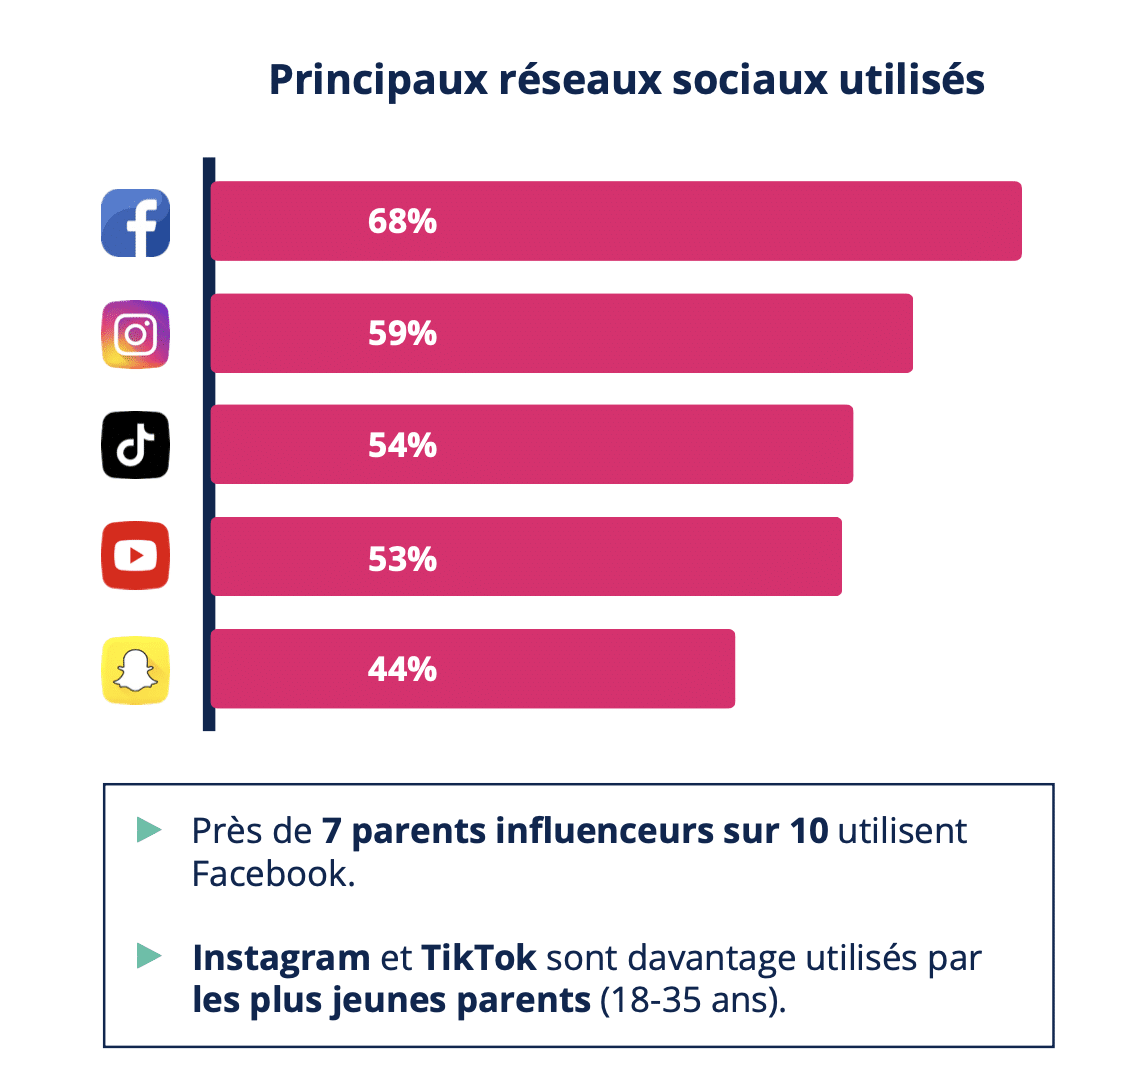 Infographie sur les principaux réseaux sociaux utilisés par les parents influenceurs